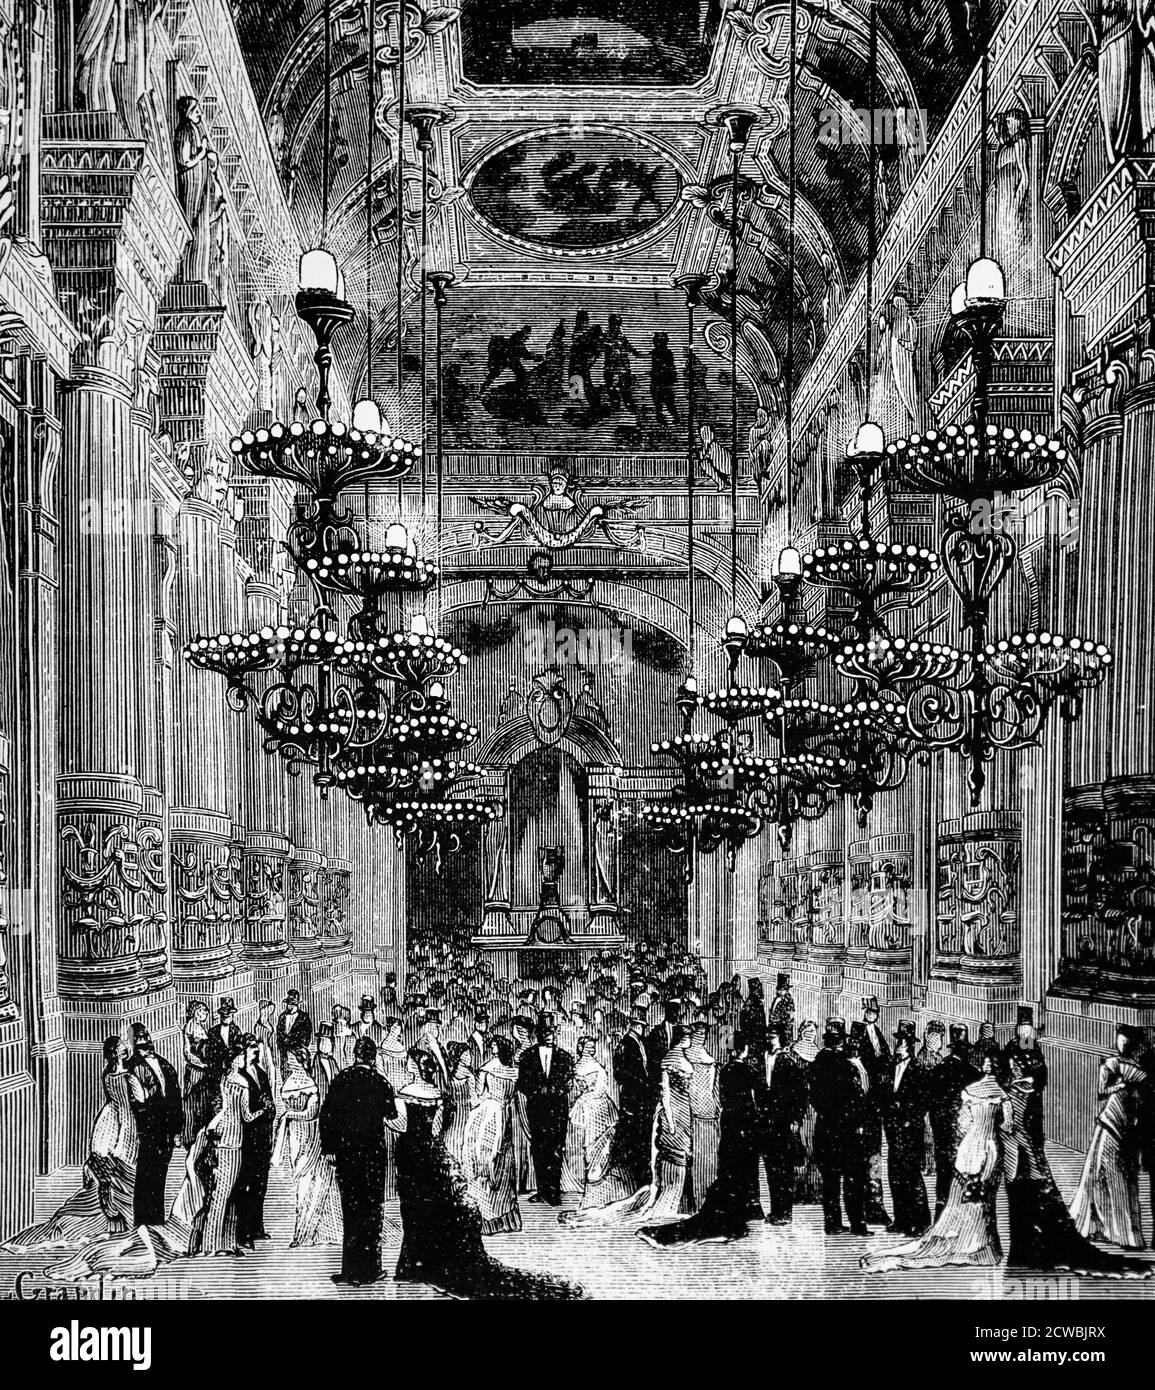 Incisione raffigurante il foyer dell'Opera di Parigi illuminata da lampade Maxim, Edison e Soleil Foto Stock